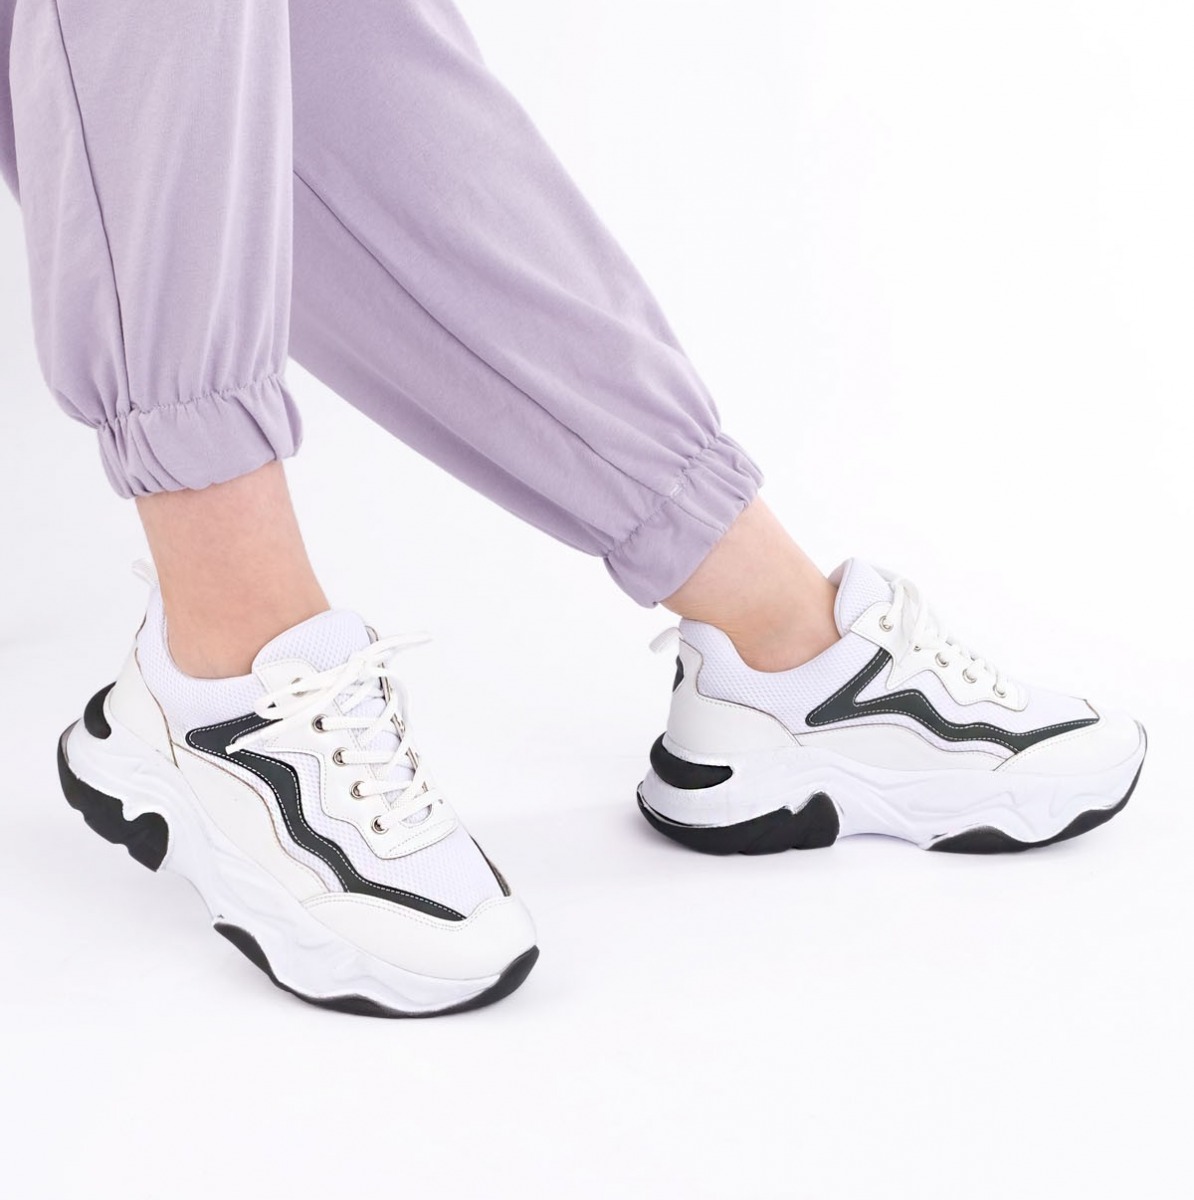 Flo Kadın Sneaker Dolgu Topuk Spor Ayakkabı Cevas Beyaz. 1